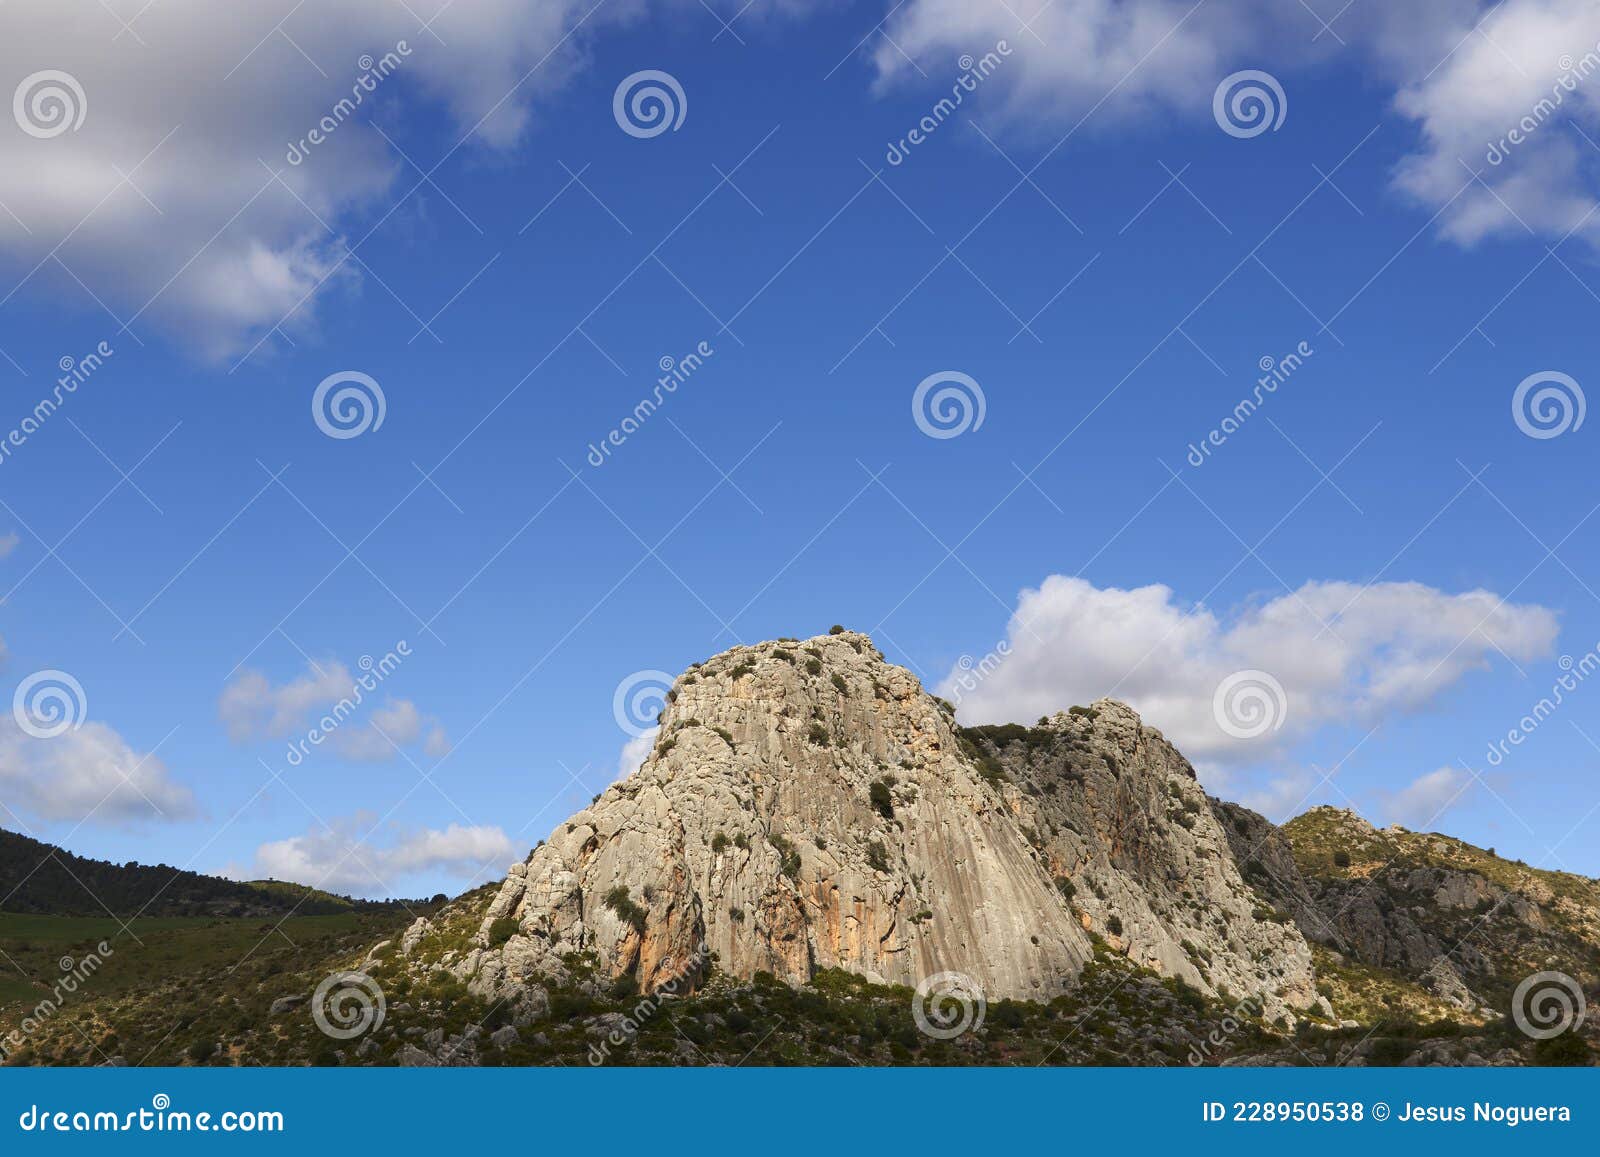 cerro romero limestone formation in ardales, malaga province. spain